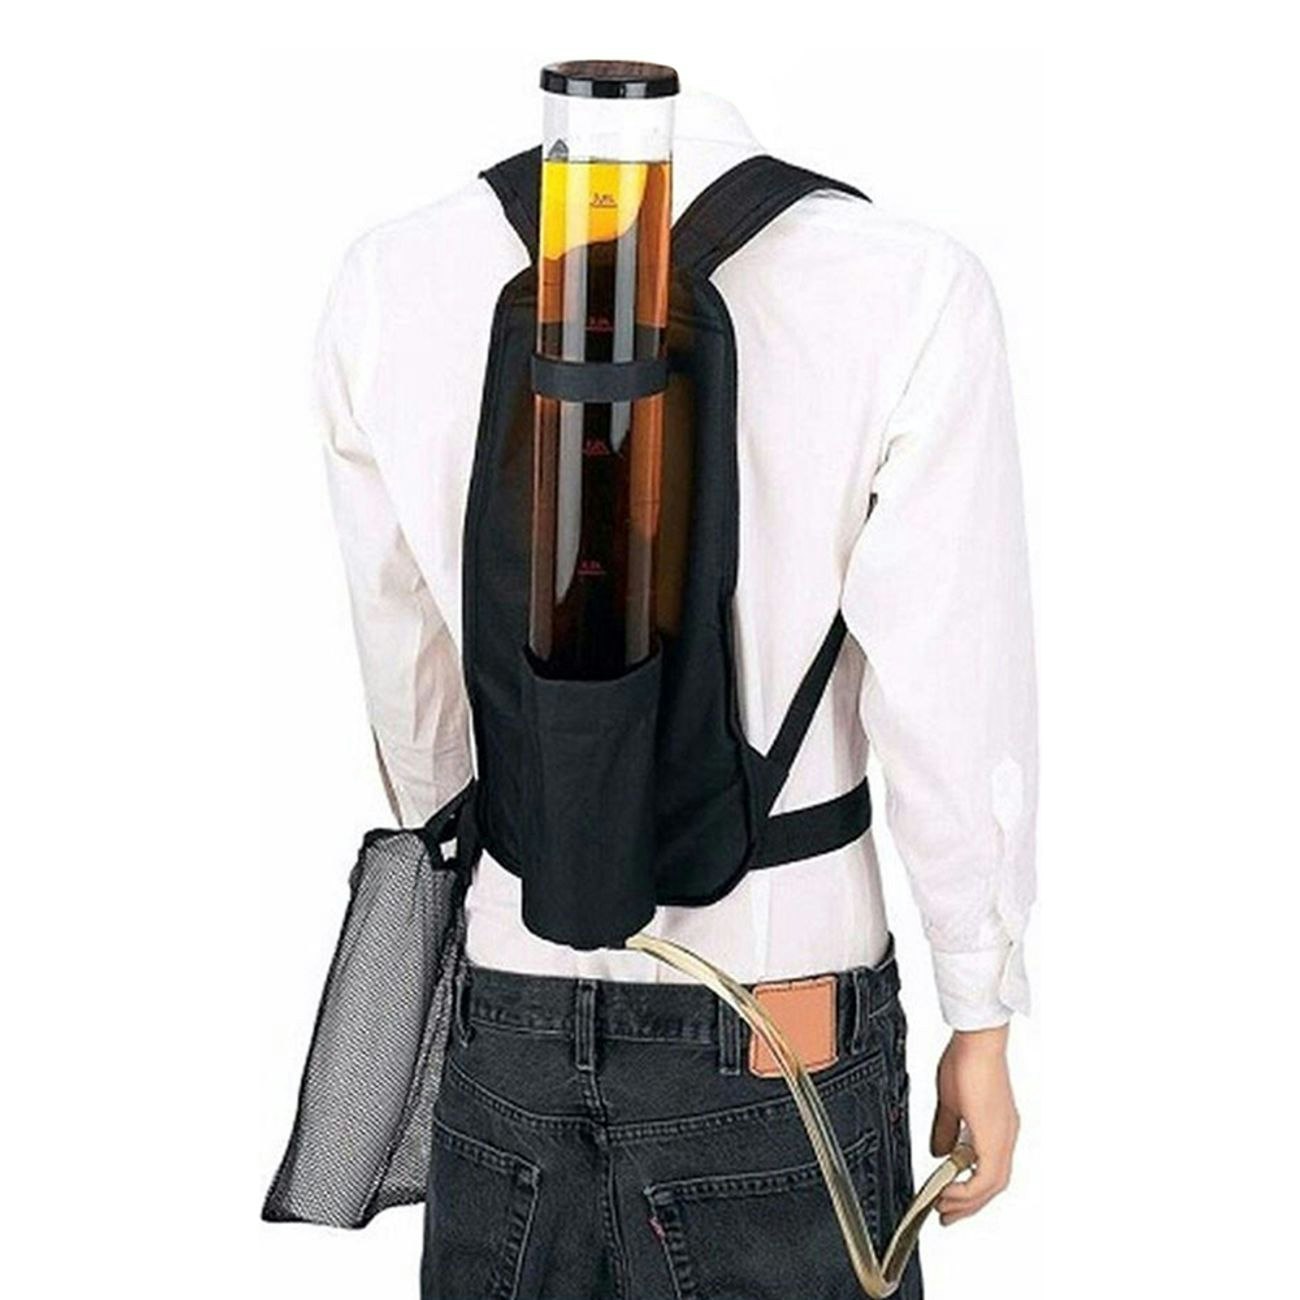 Backpack Drinks Dispenser